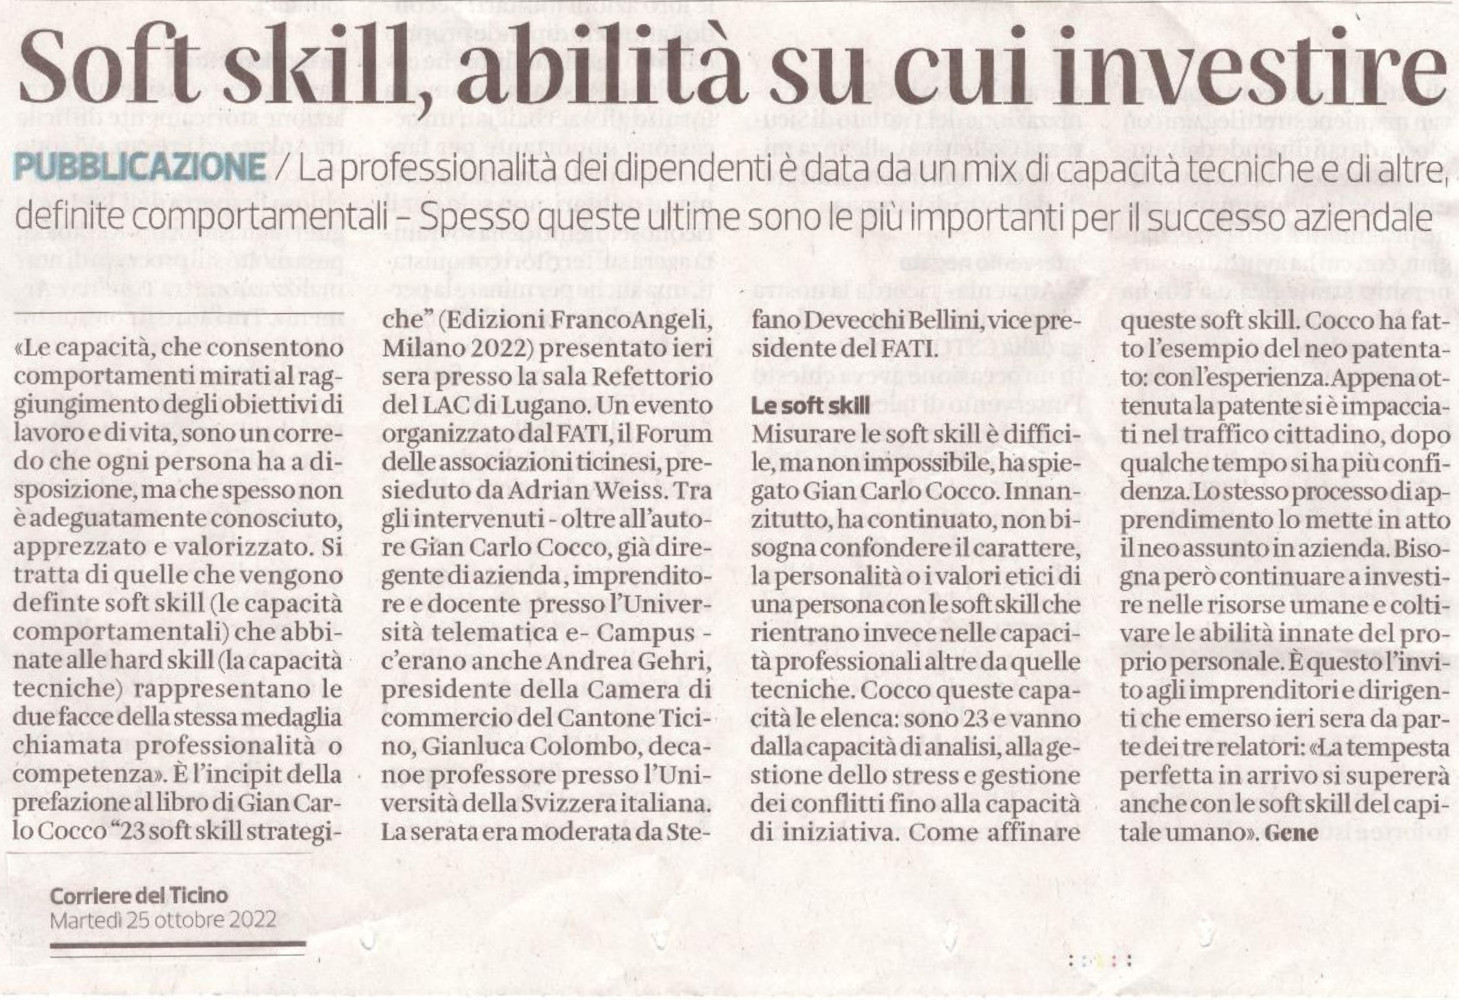 00 Articolo Corriere del Ticino 25 ott 2022